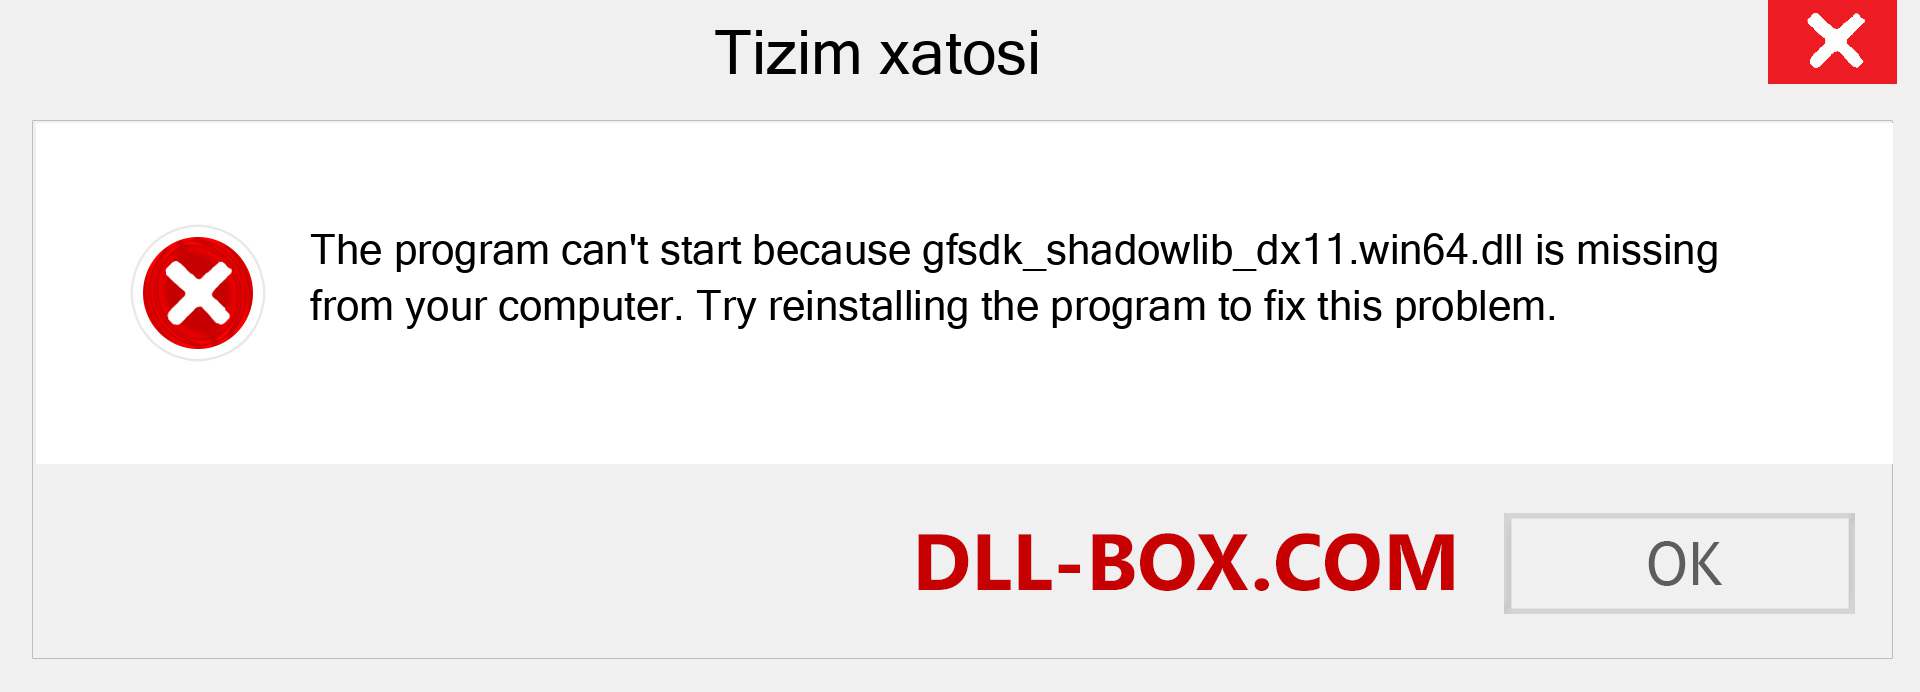 gfsdk_shadowlib_dx11.win64.dll fayli yo'qolganmi?. Windows 7, 8, 10 uchun yuklab olish - Windowsda gfsdk_shadowlib_dx11.win64 dll etishmayotgan xatoni tuzating, rasmlar, rasmlar